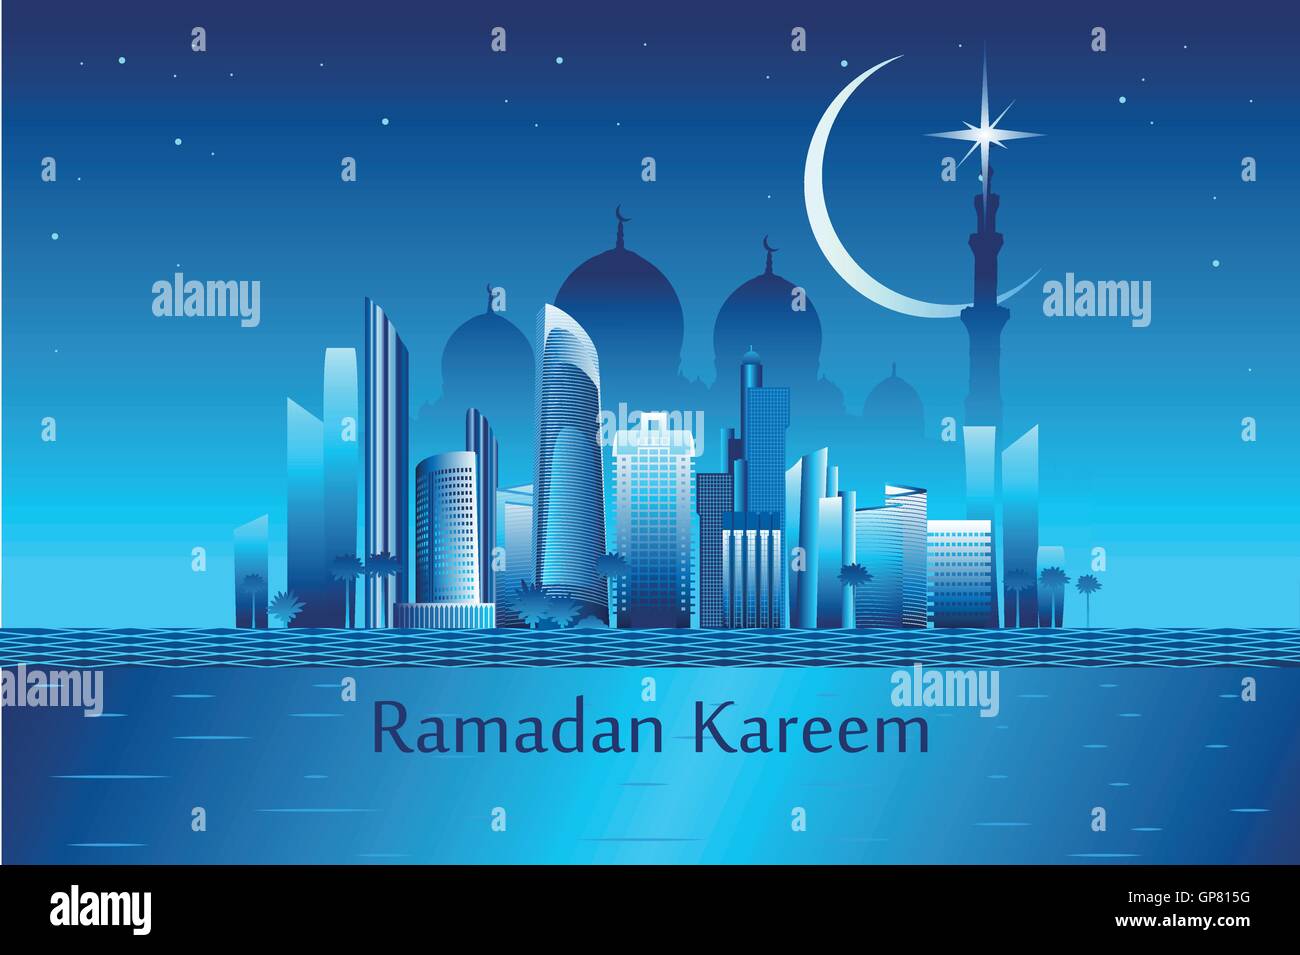 Il Ramadan kareem significato "Il Ramadan è generoso' messaggio sul paesaggio urbano Abu-Dhabi con grattacieli e moschea bianca illustr vettore Illustrazione Vettoriale